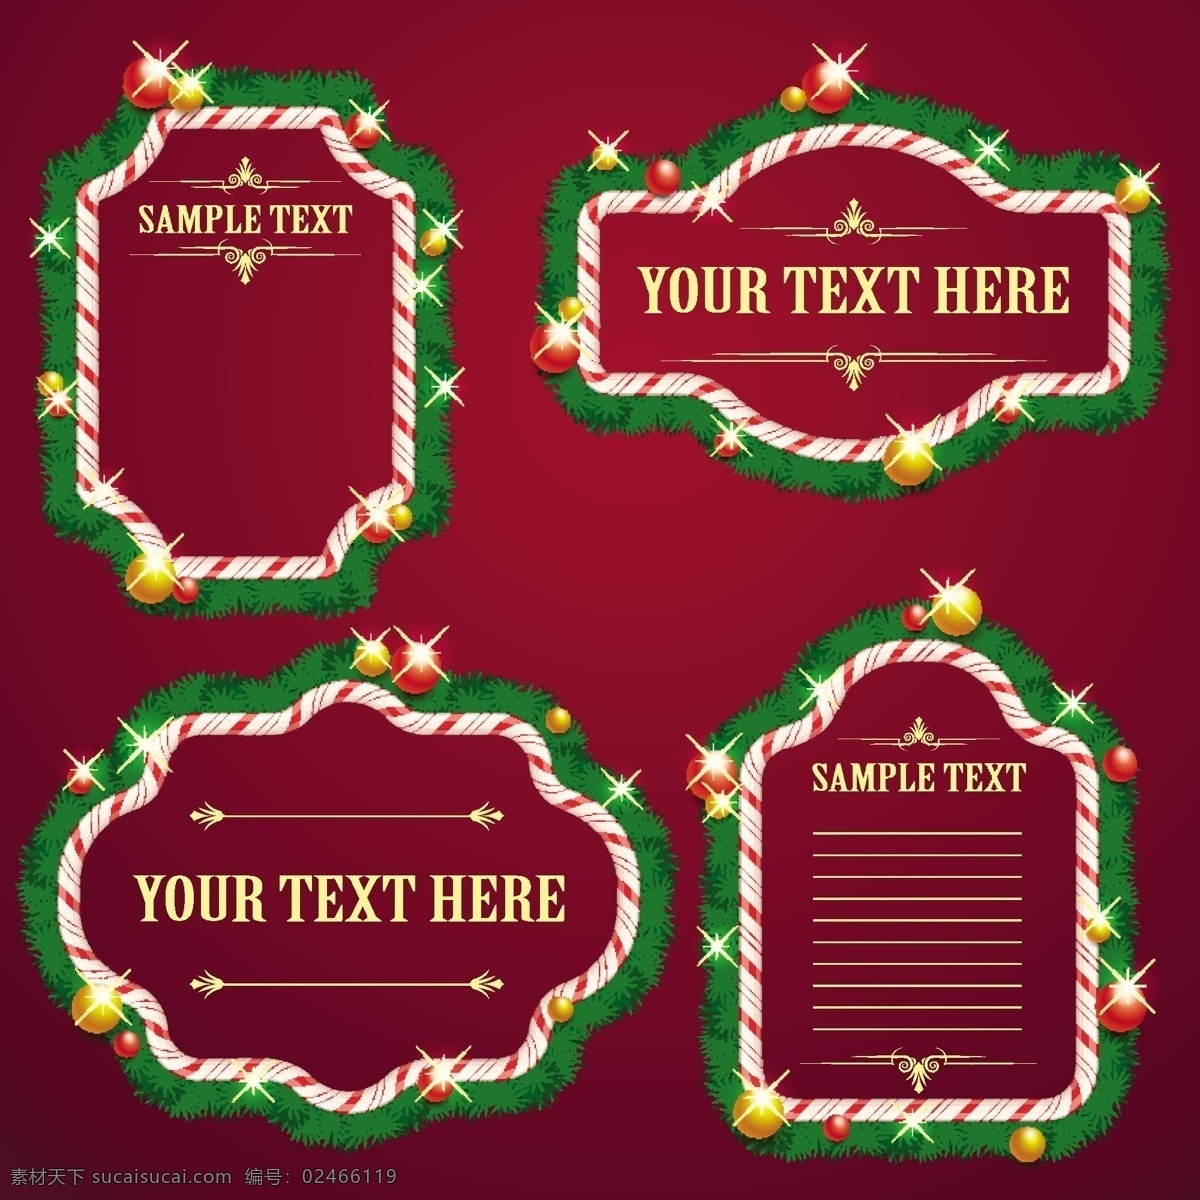 圣诞节 绿色 装饰 矢量 背景 红色 球体 贺卡背景 背景素材 源文件 免费素材 广告背景